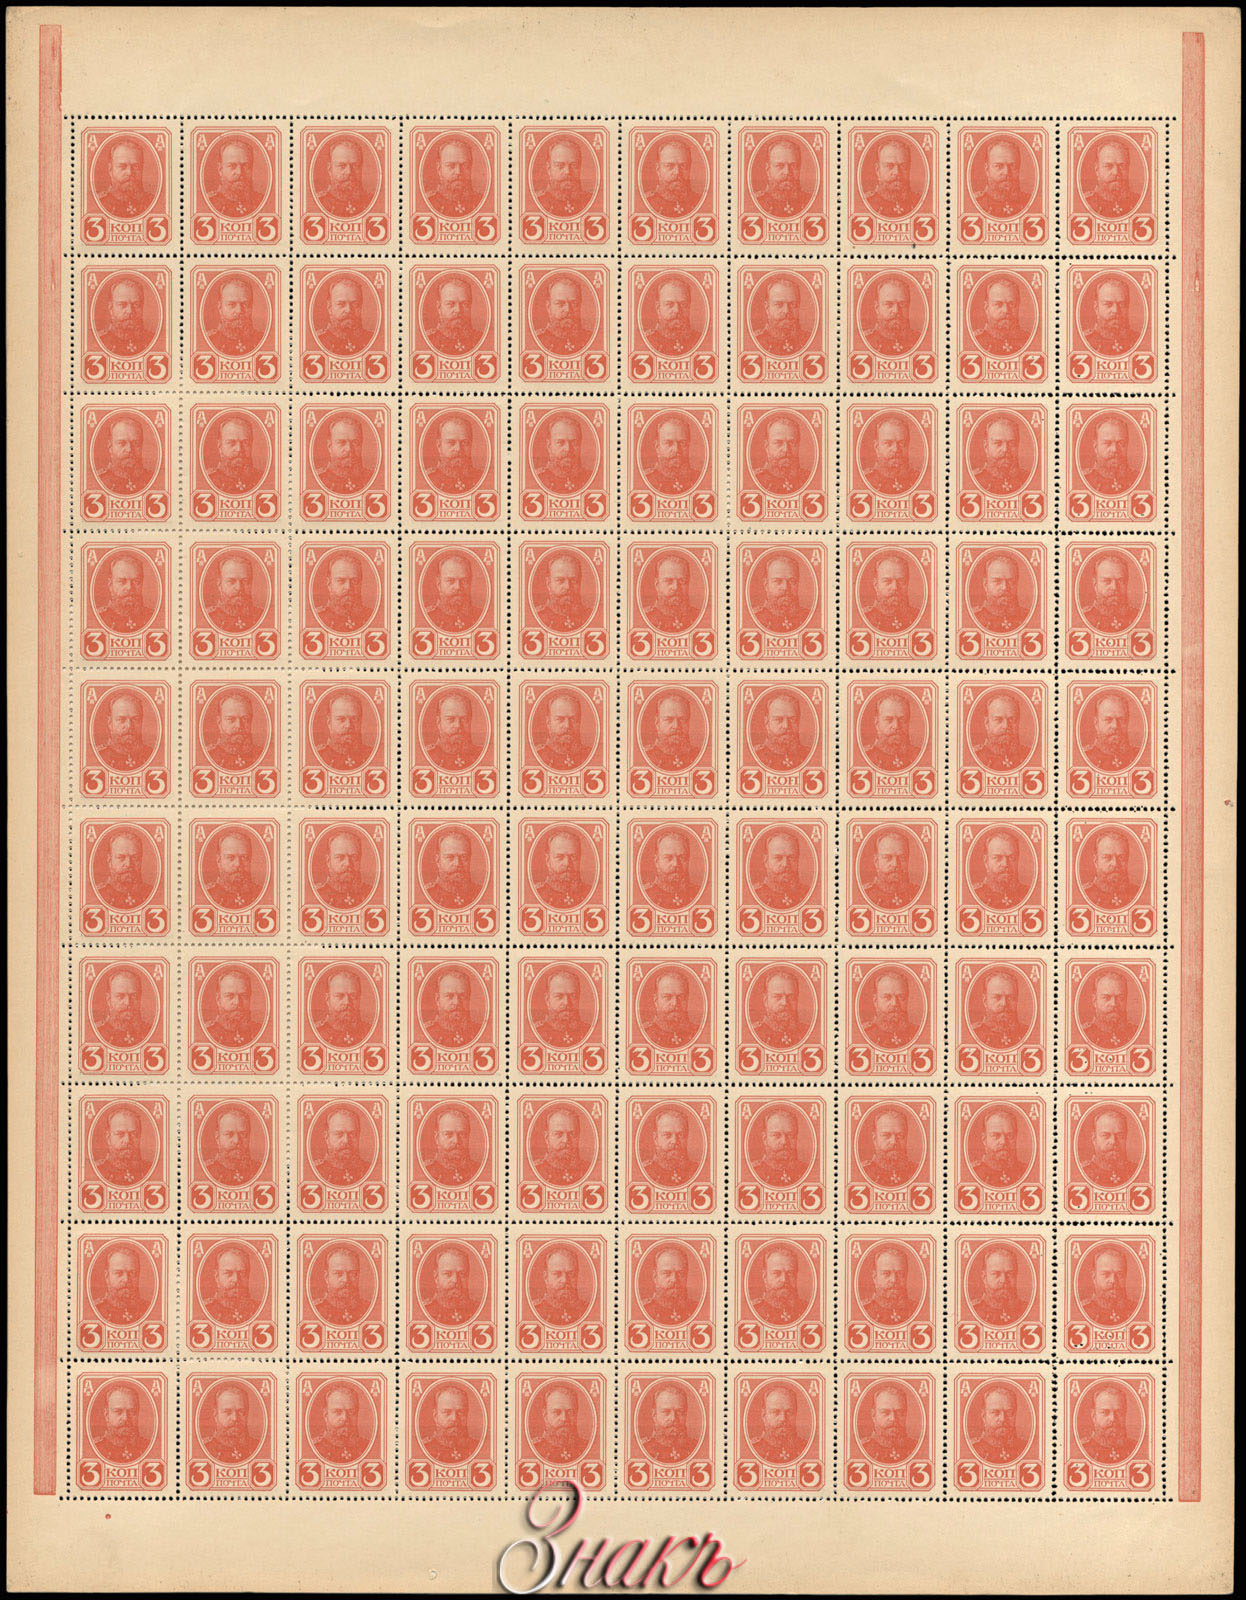   3  1915   100  (10  10) 